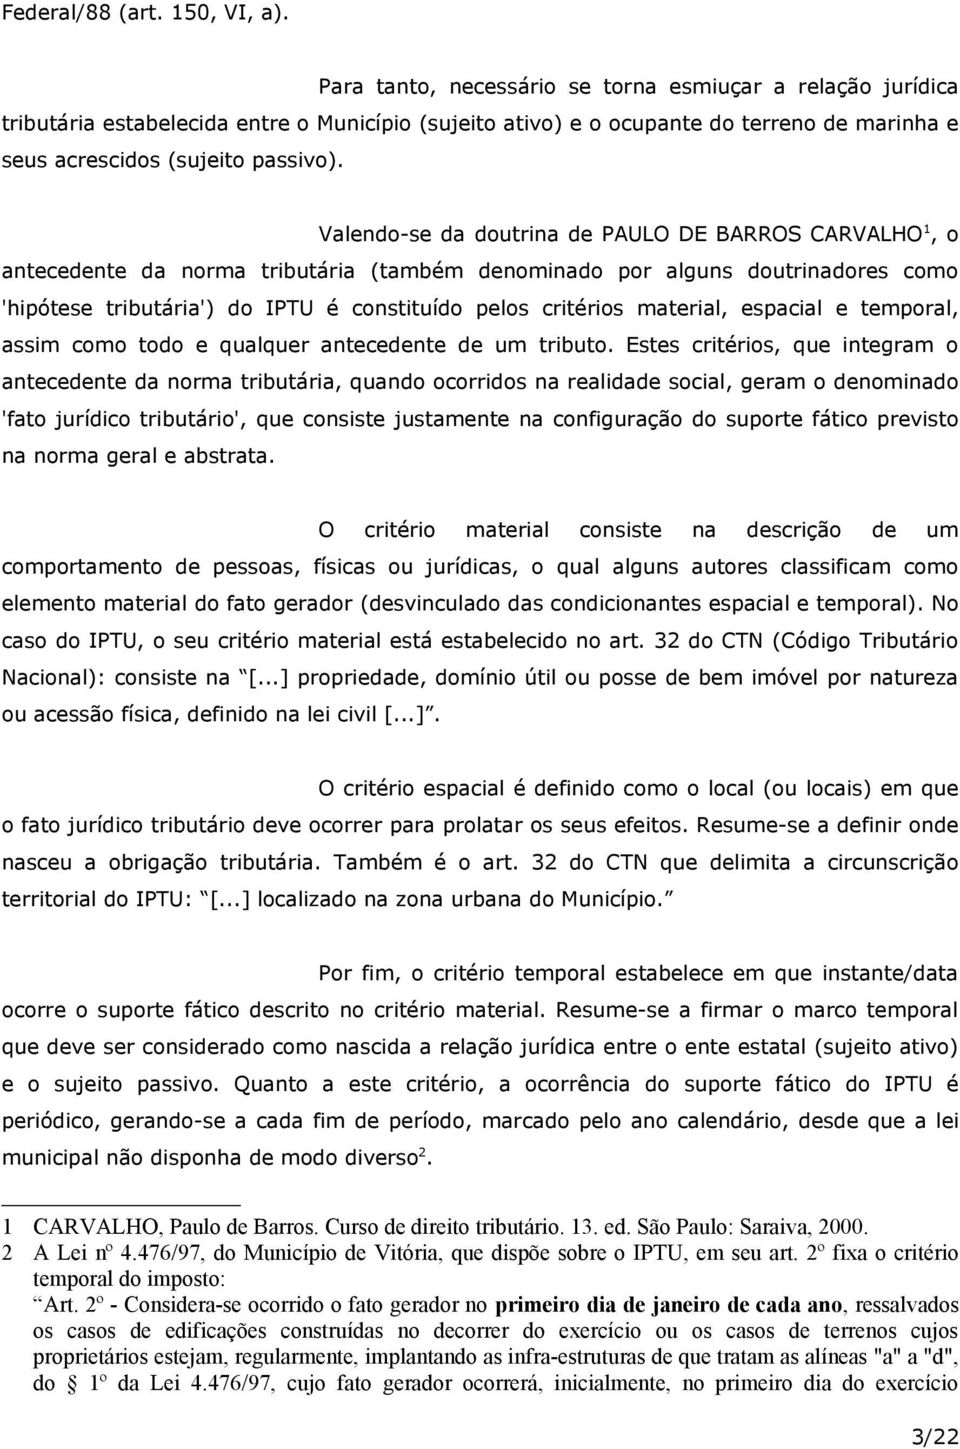 Valendo-se da doutrina de PAULO DE BARROS CARVALHO 1, o antecedente da norma tributária (também denominado por alguns doutrinadores como 'hipótese tributária') do IPTU é constituído pelos critérios